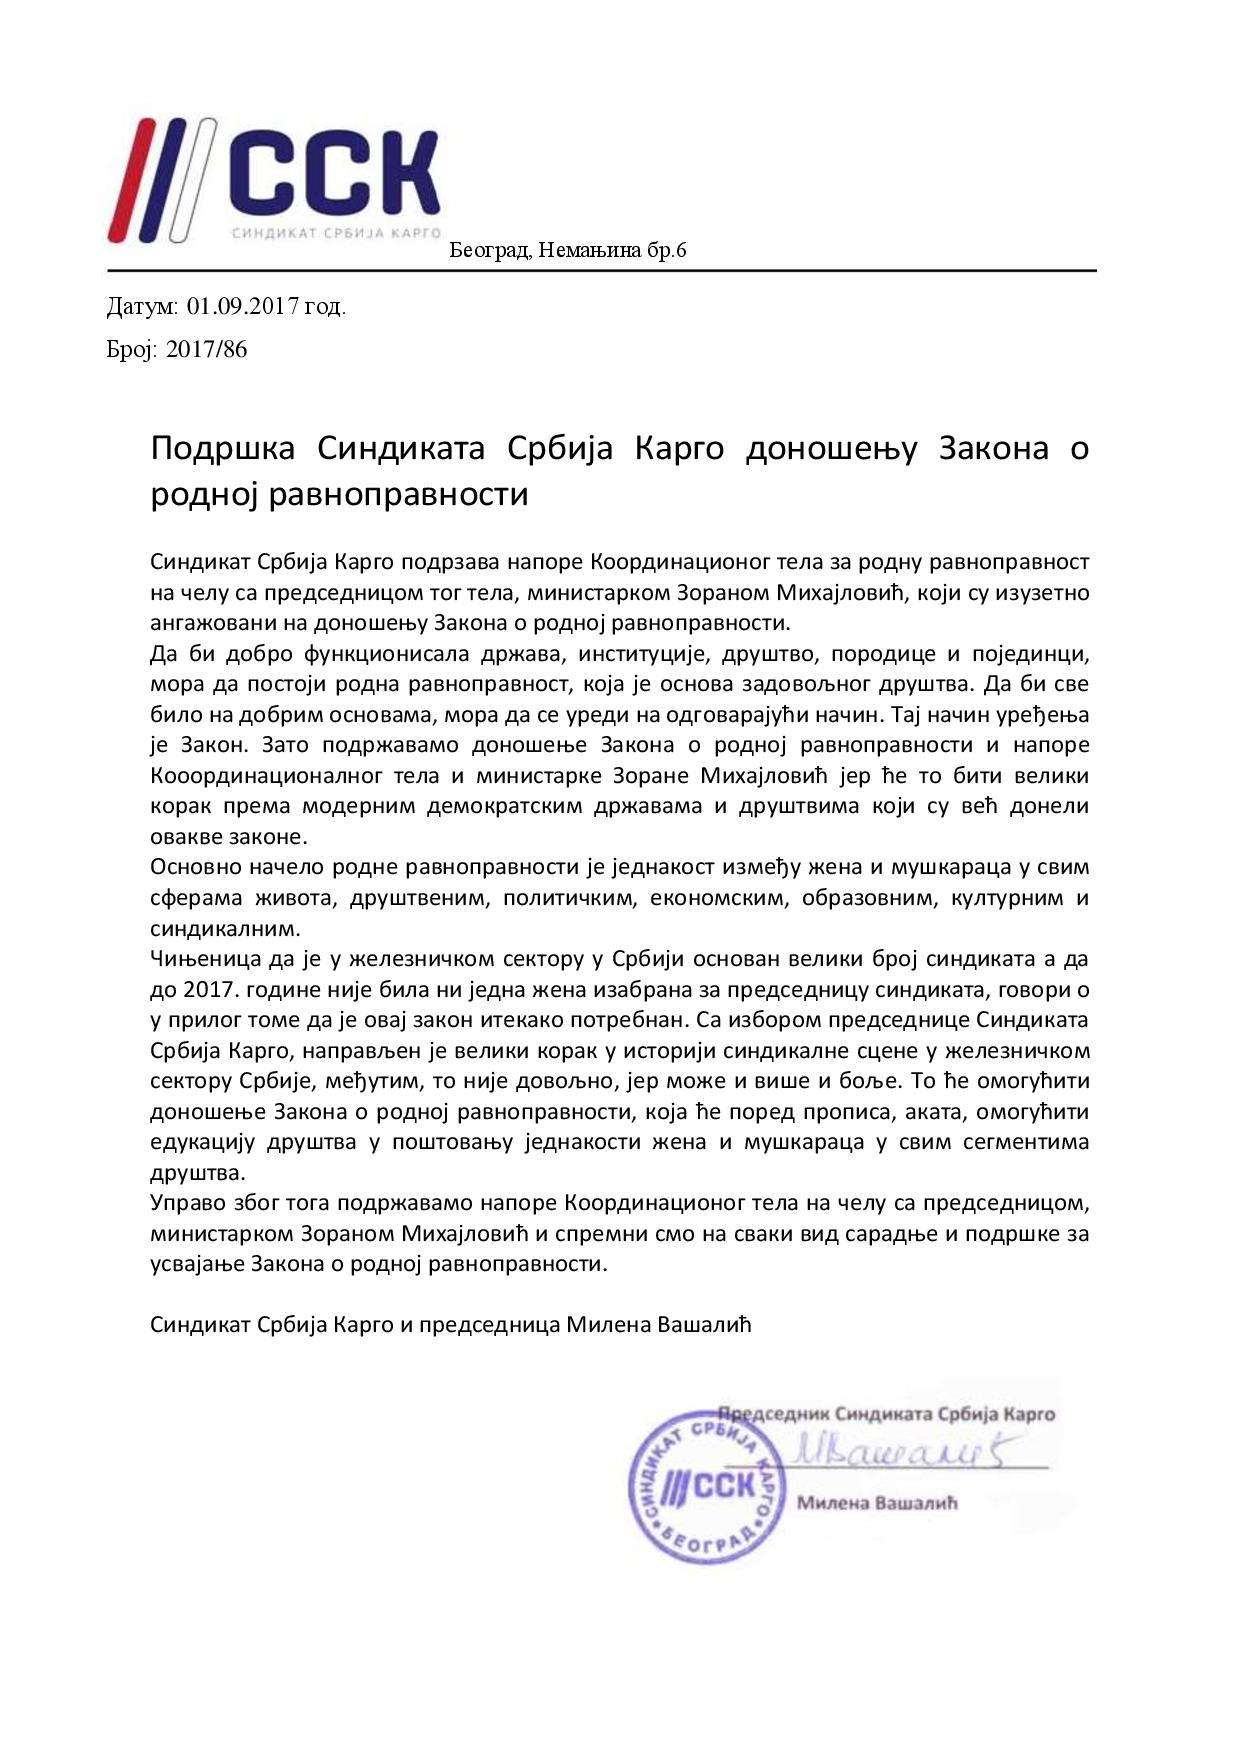 Синдикат Србија карго - подршка усвајању Закона о родној равноправности